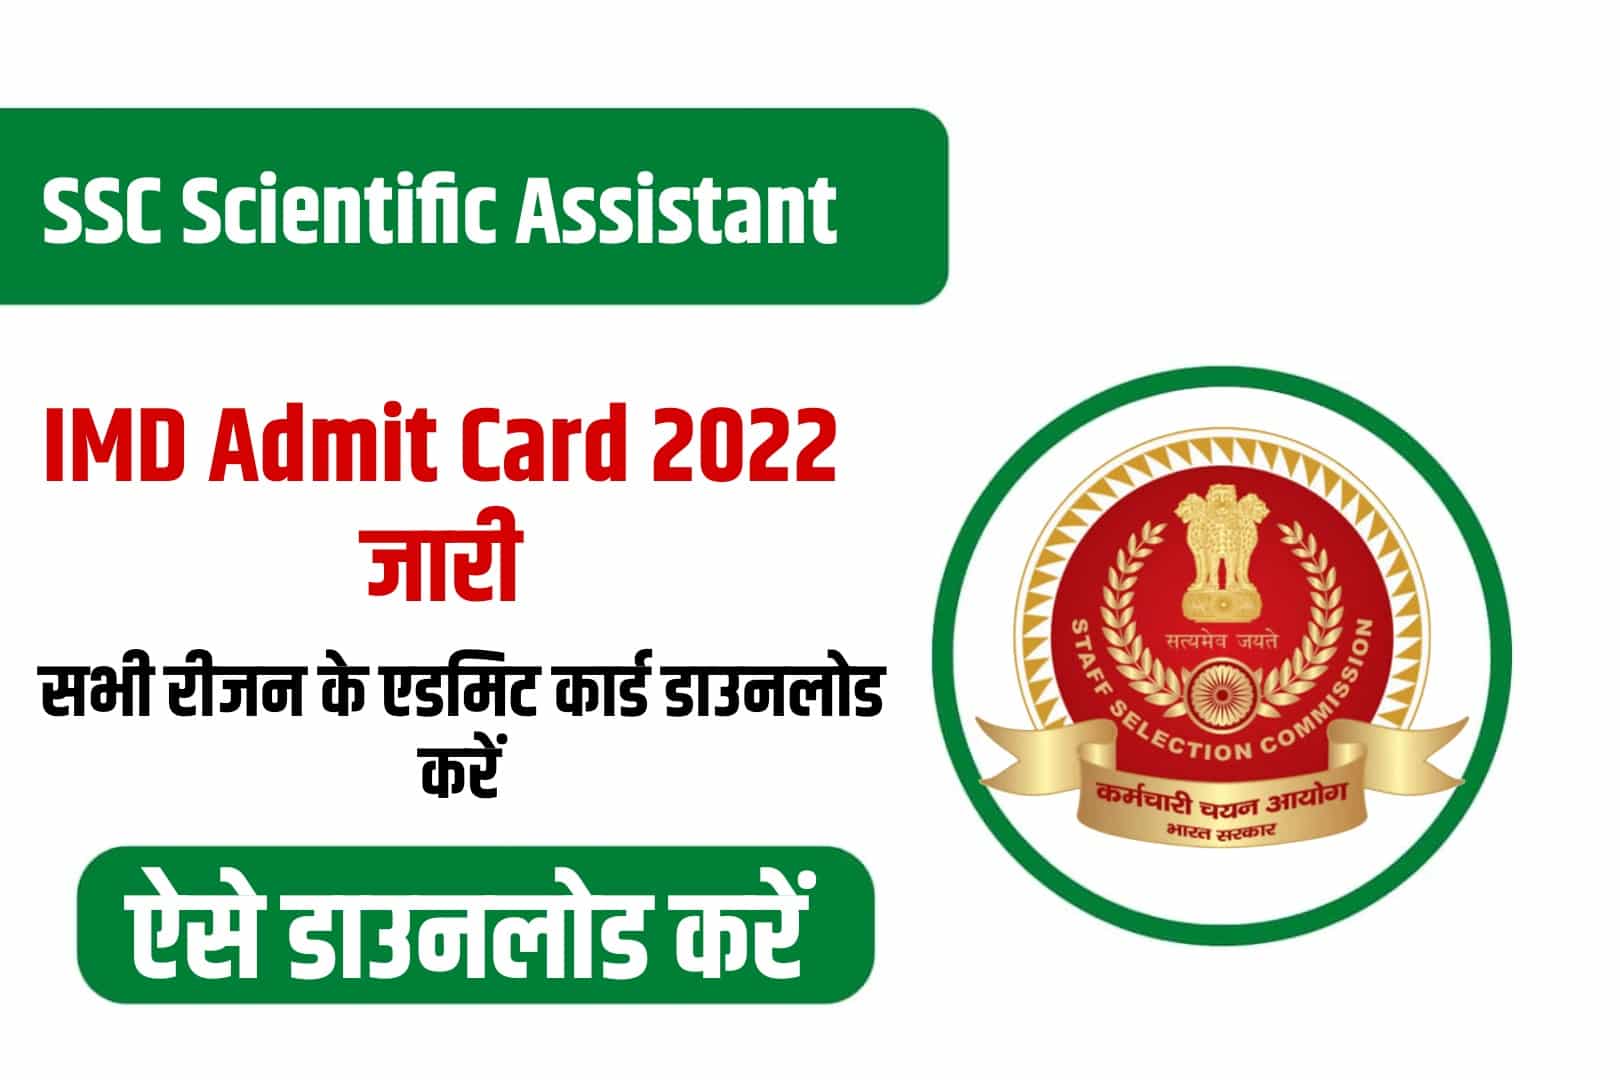 SSC Scientific Assistant IMD Admit Card 2022 | एसएससी साइंटिफिक असिस्टेंट एडमिट कार्ड